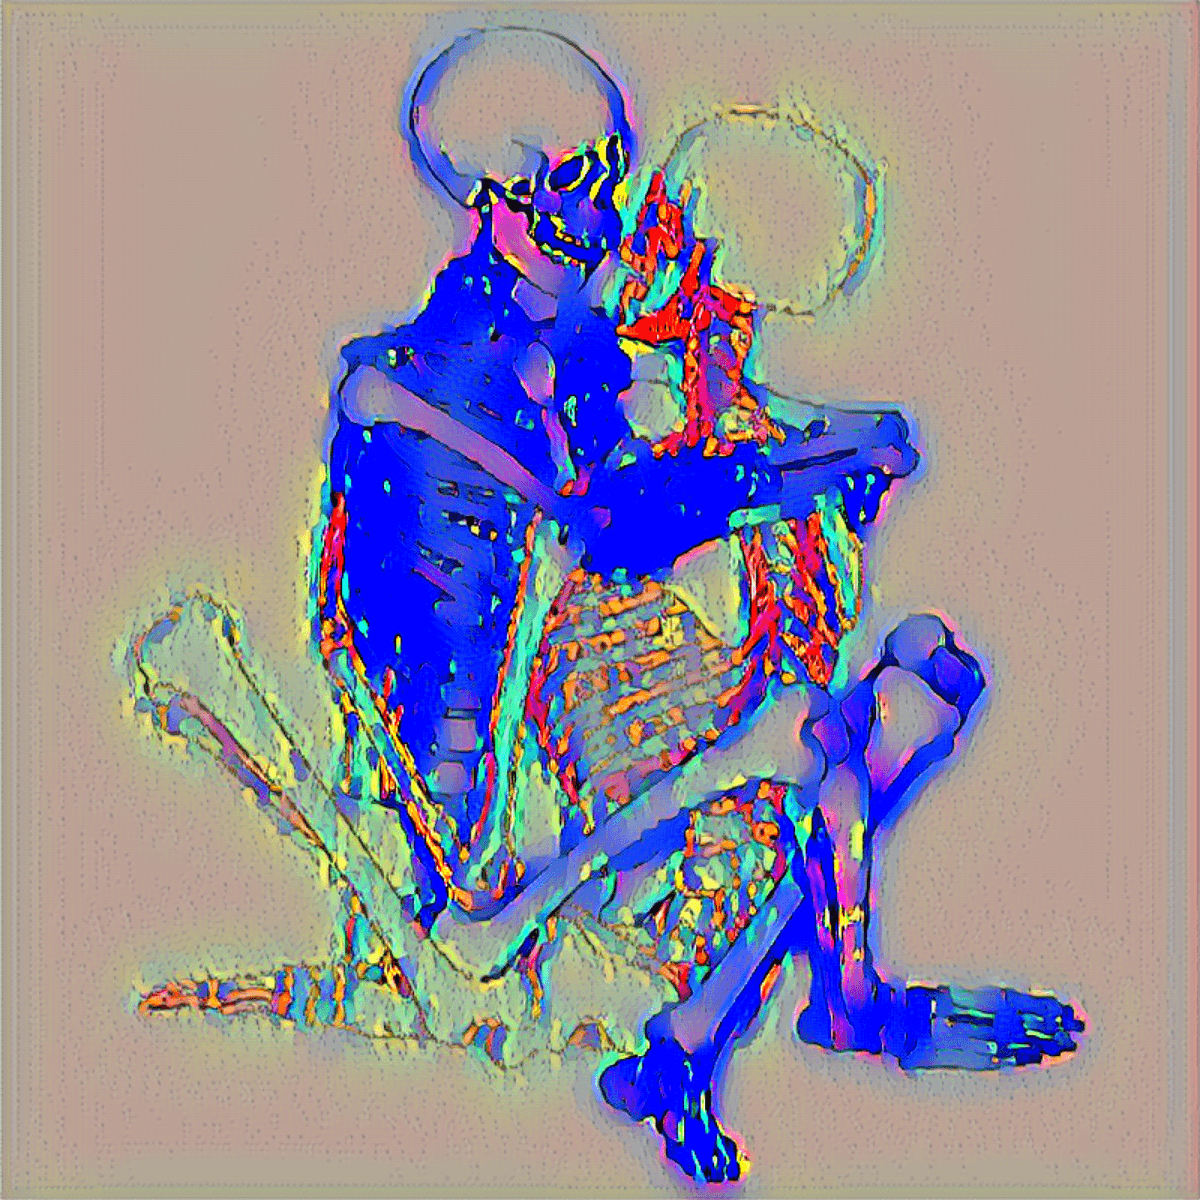 Skeleton friendship, color palette 1